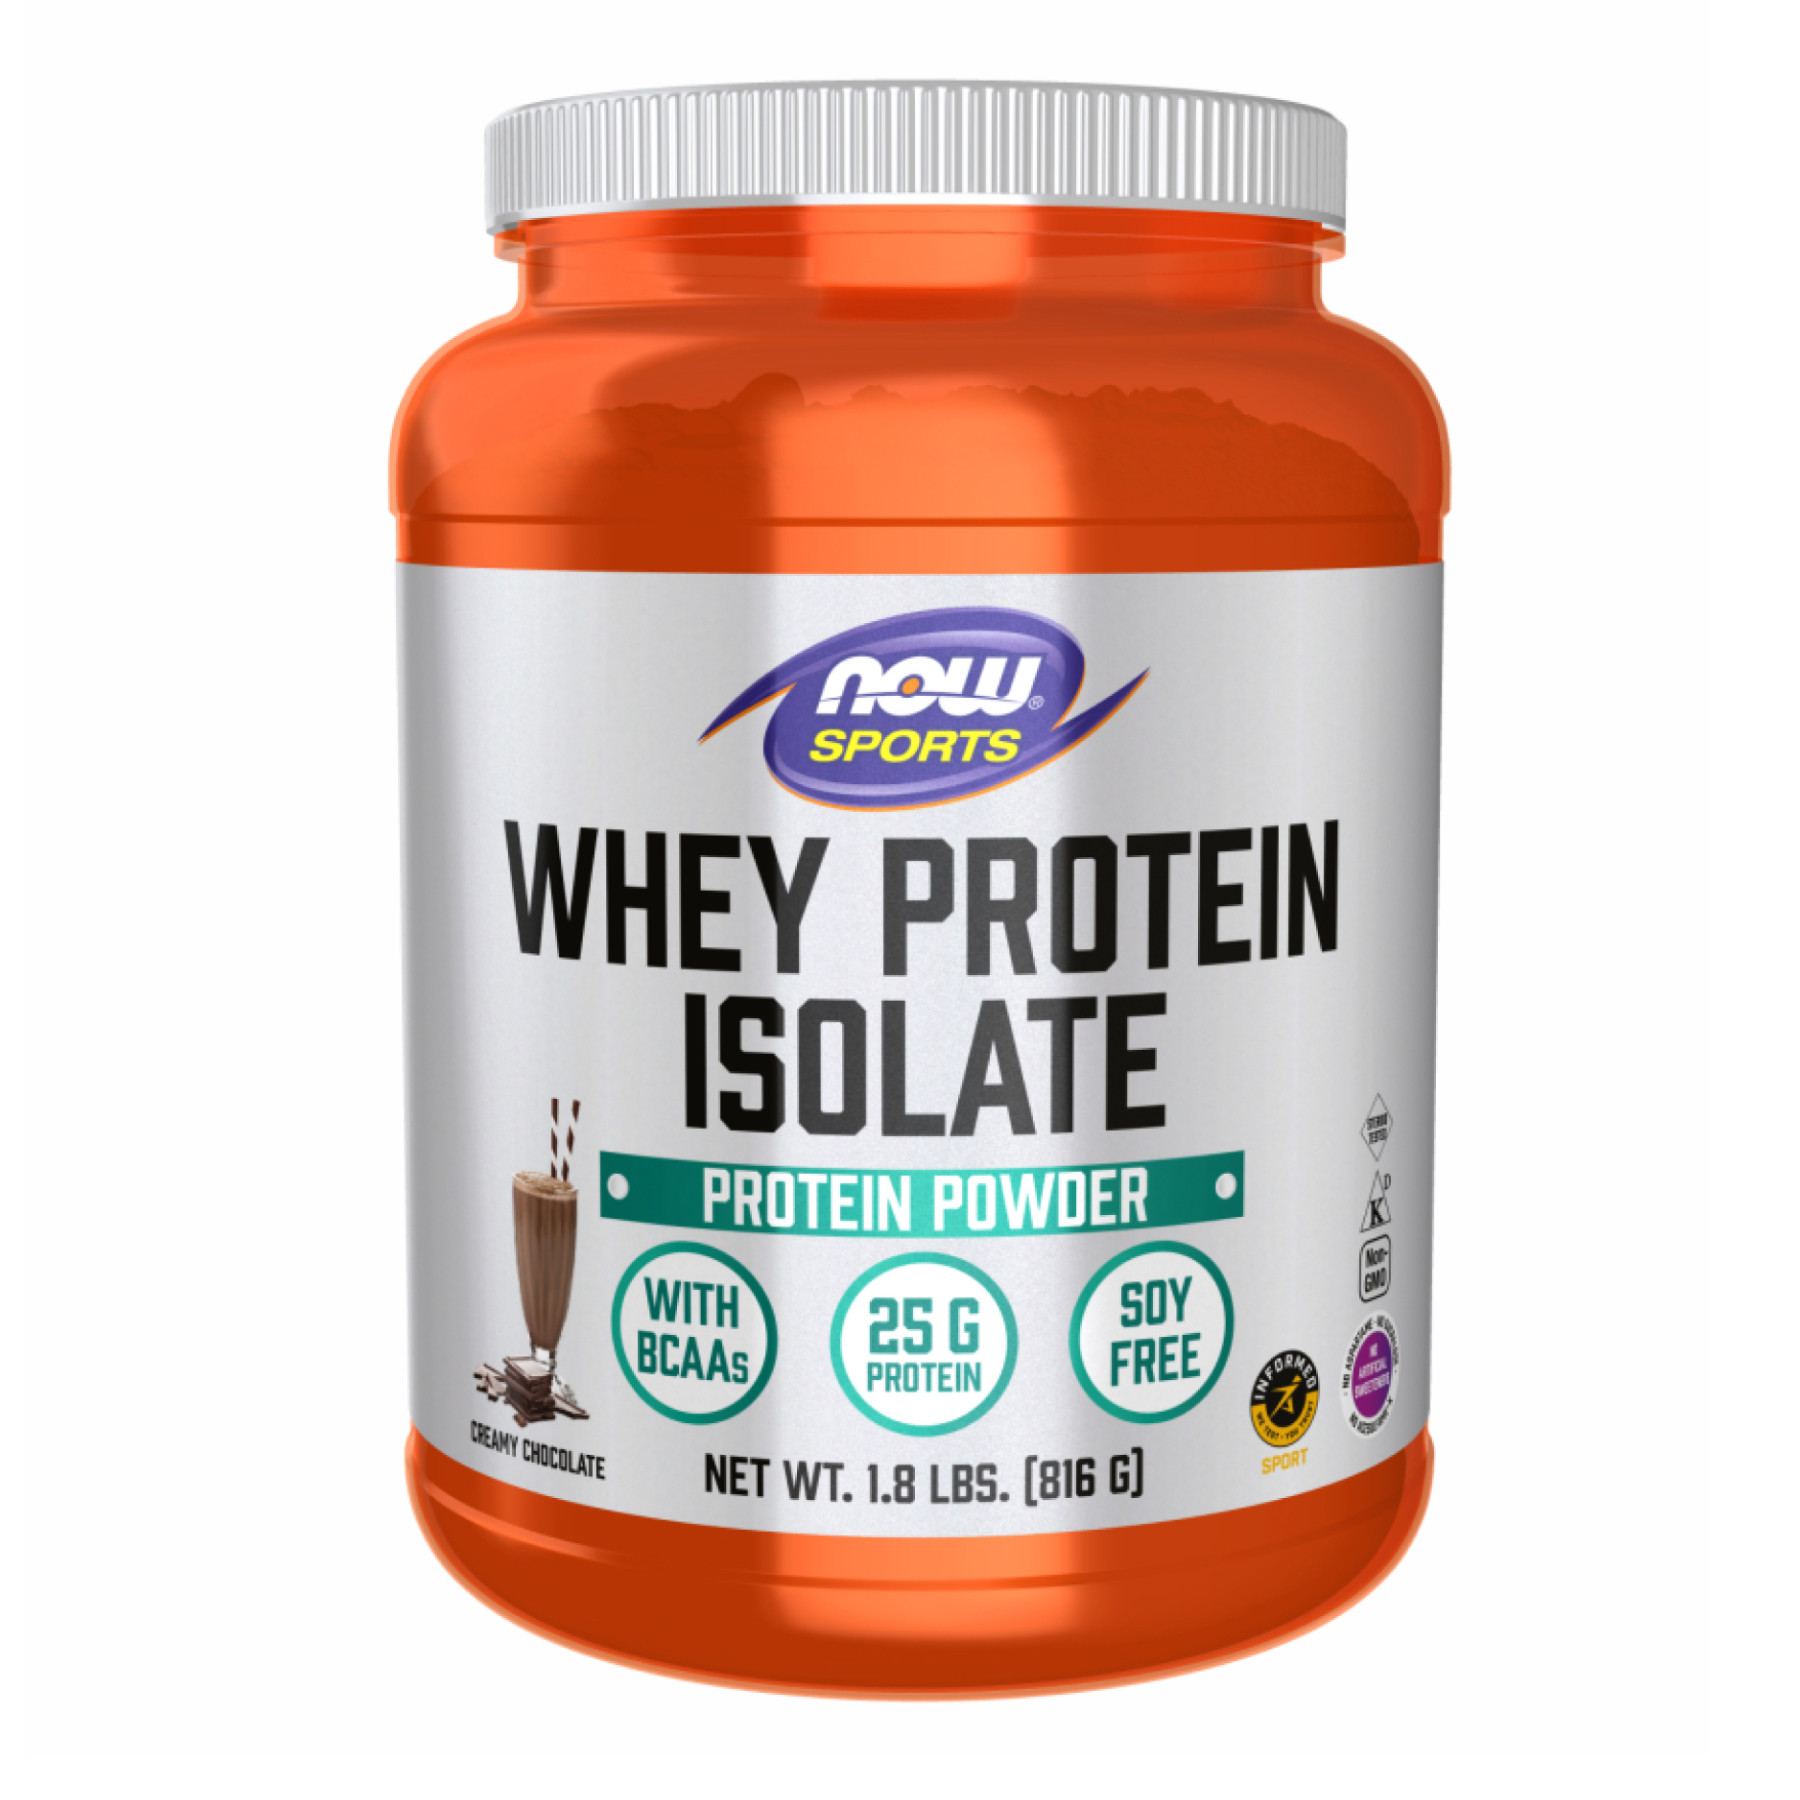 Порошок Whey Protein Isolate - 816g Chocolate 2022-10-1344